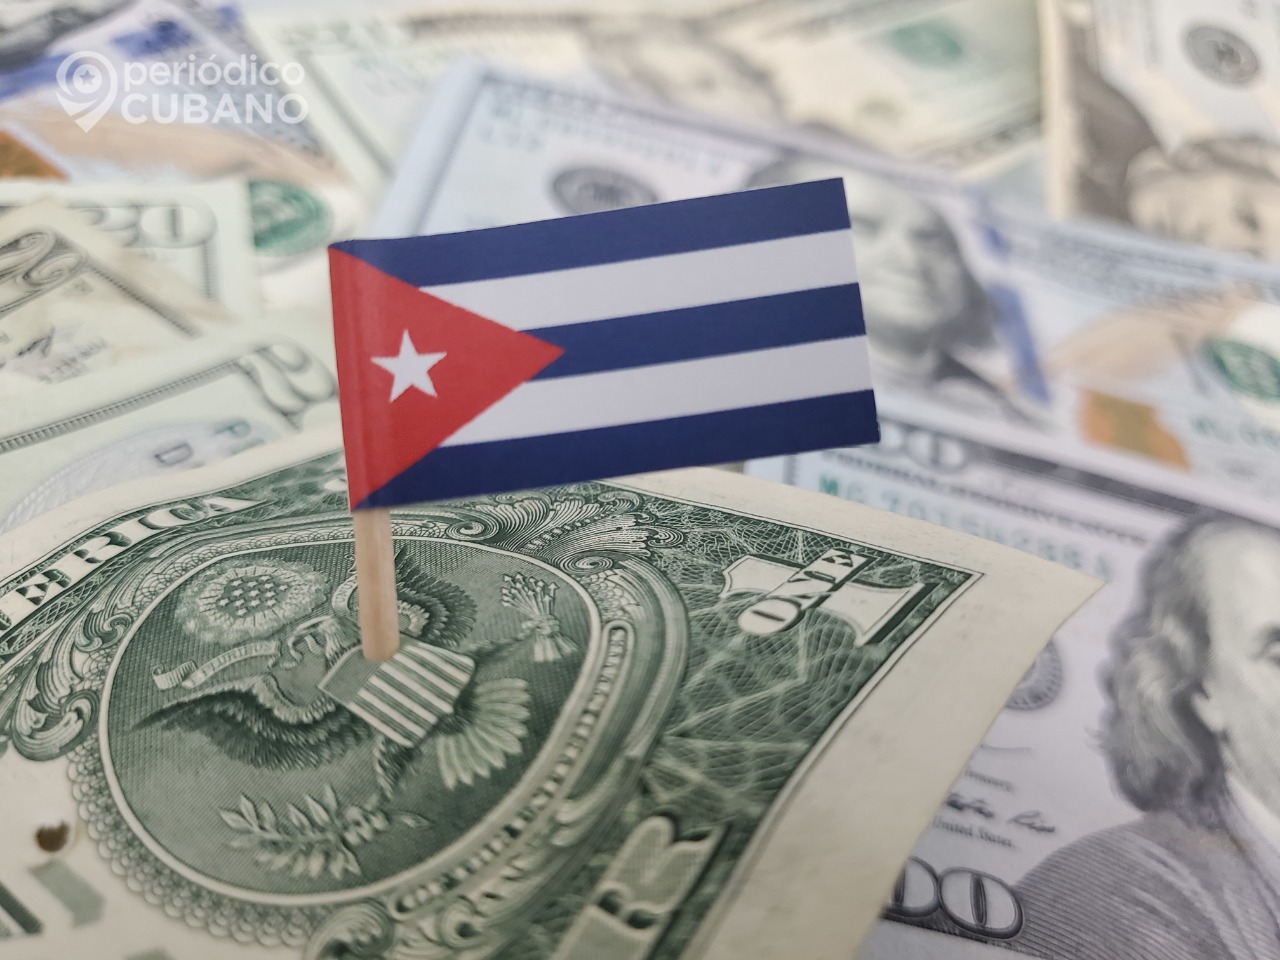 Noticias de Cuba más leídas: El dólar supera la barrera de los 100 pesos cubanos